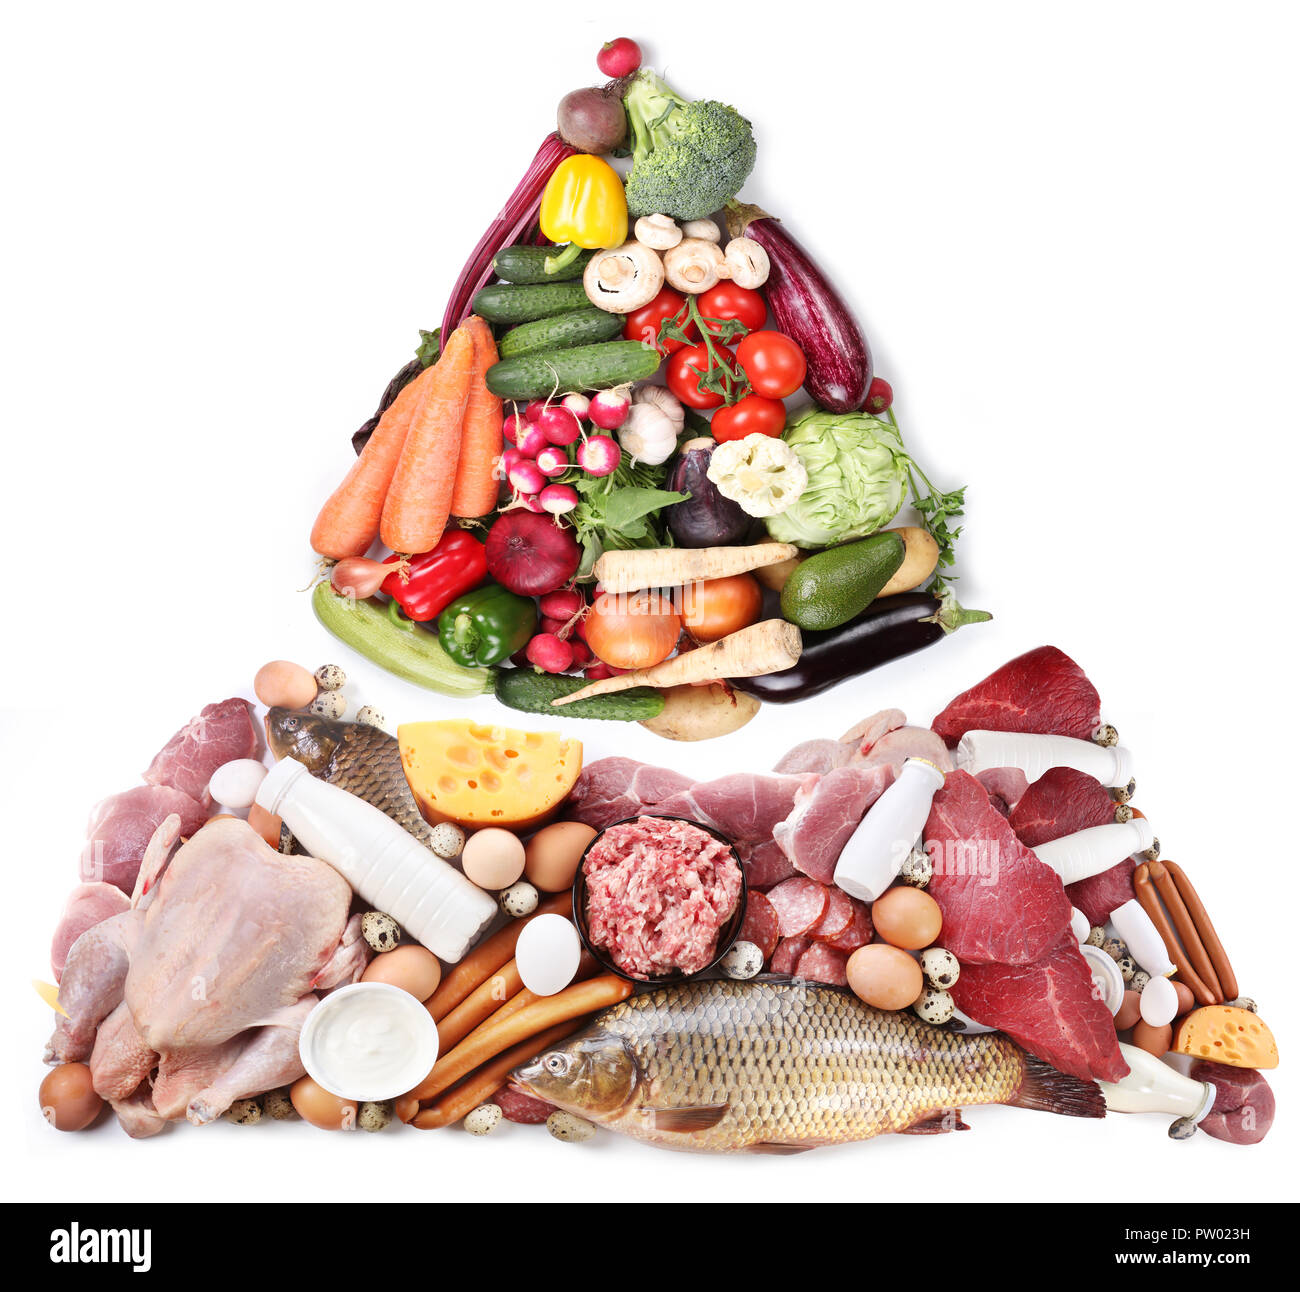 La piramide alimentare o dieta piramide di base presenta gruppi di alimenti. Foto Stock